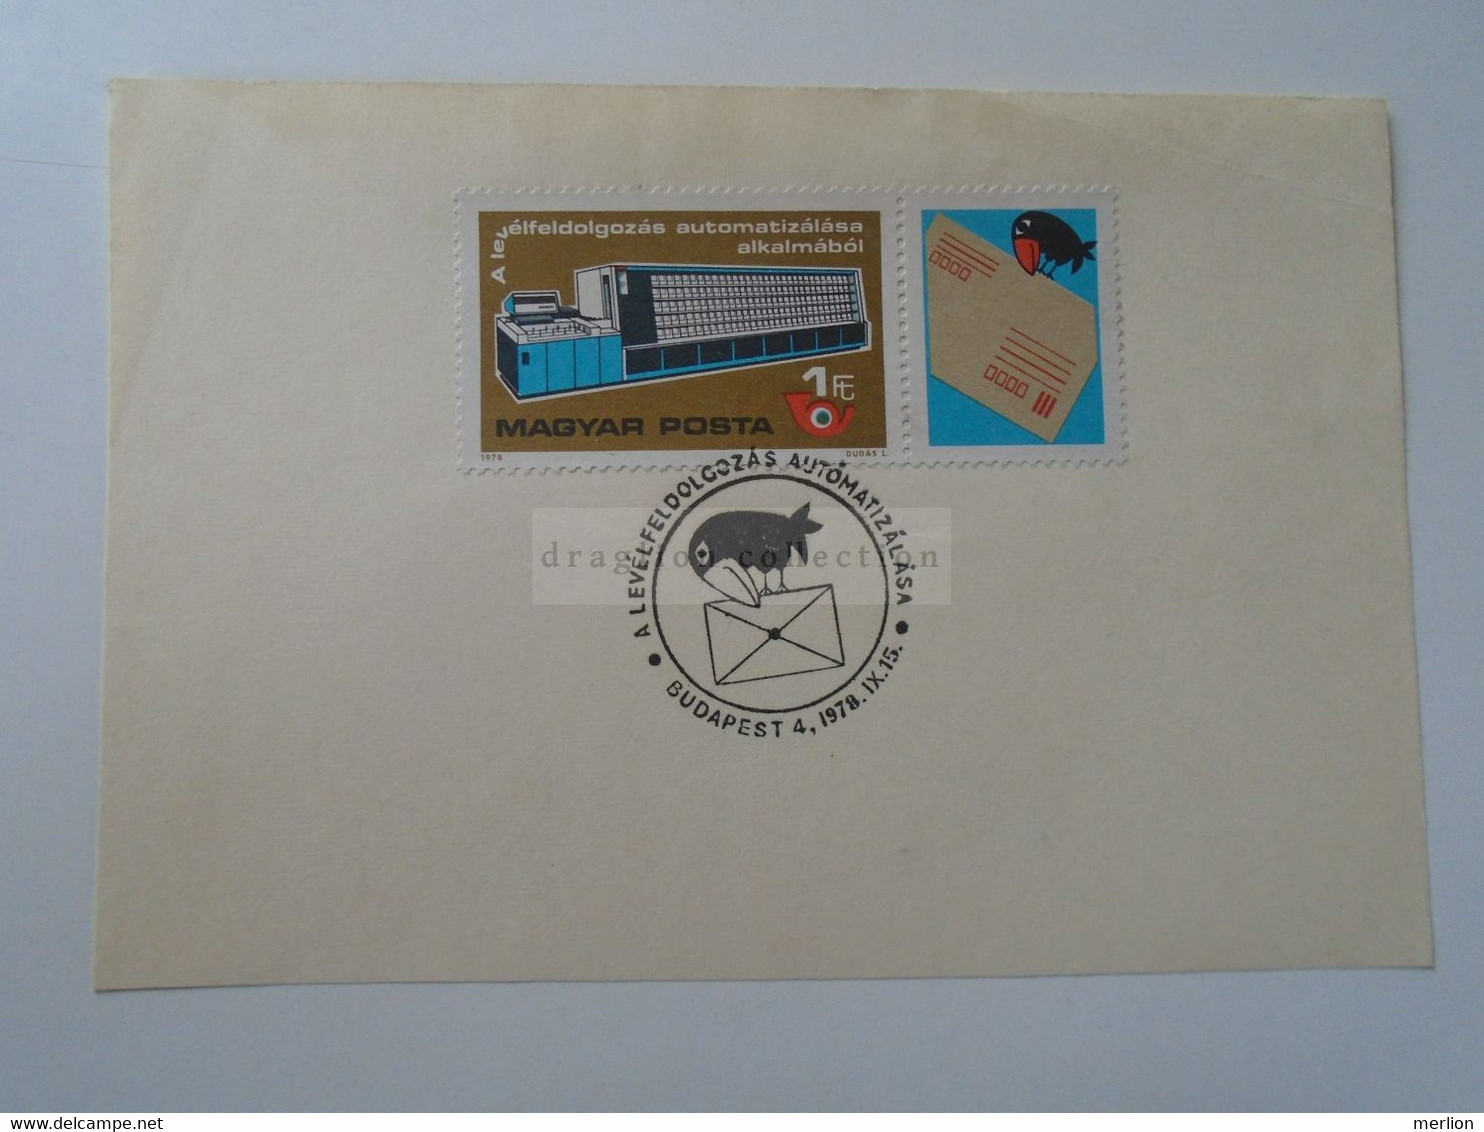 D187066   HUNGARY  Postmark     MAGYAR POSTA   - Hungarian Post - A Levélfeldolgozás Automatizálása Budapest 1978 - Postmark Collection